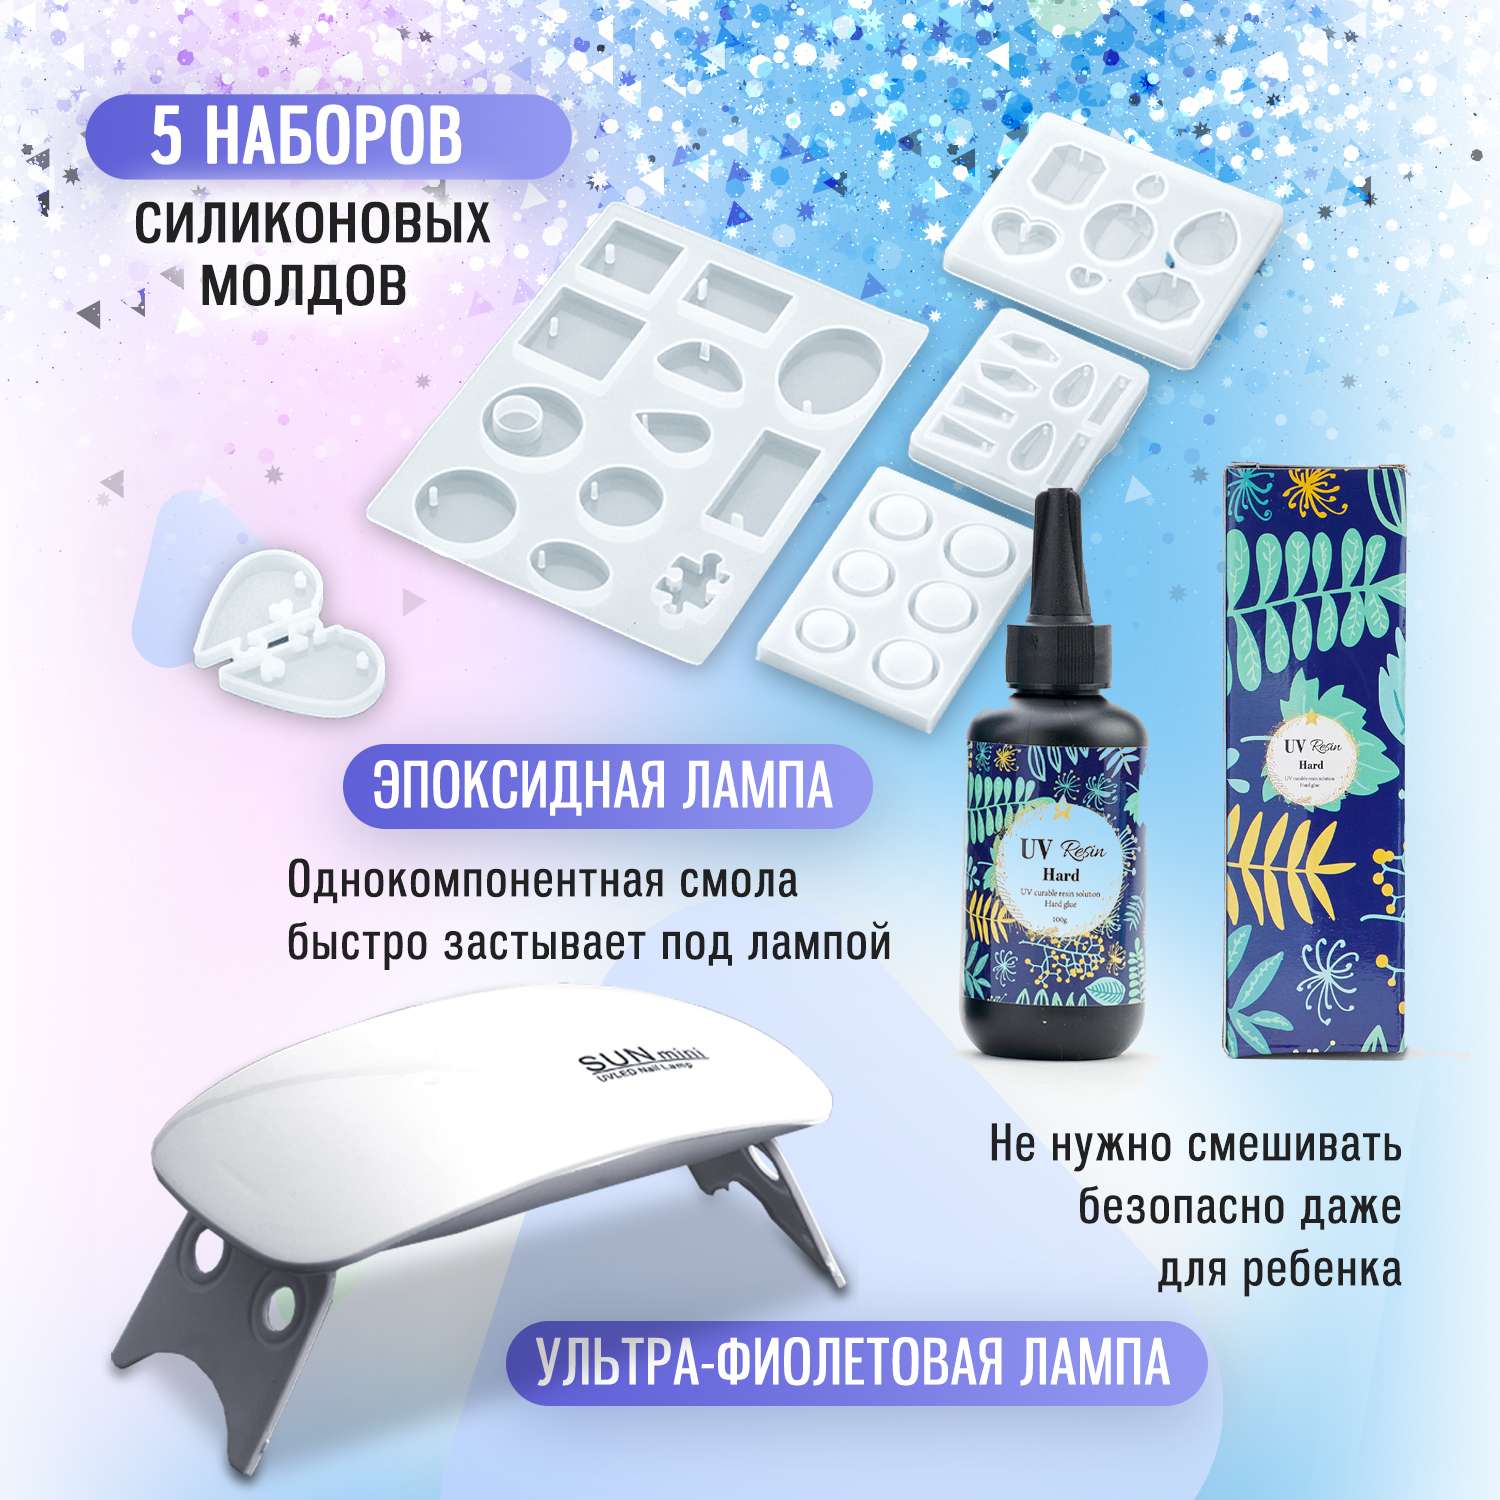 Рукоделие и наборы для творчества от 3 лет - в интернет магазине manikyrsha.ru Перекрёсток